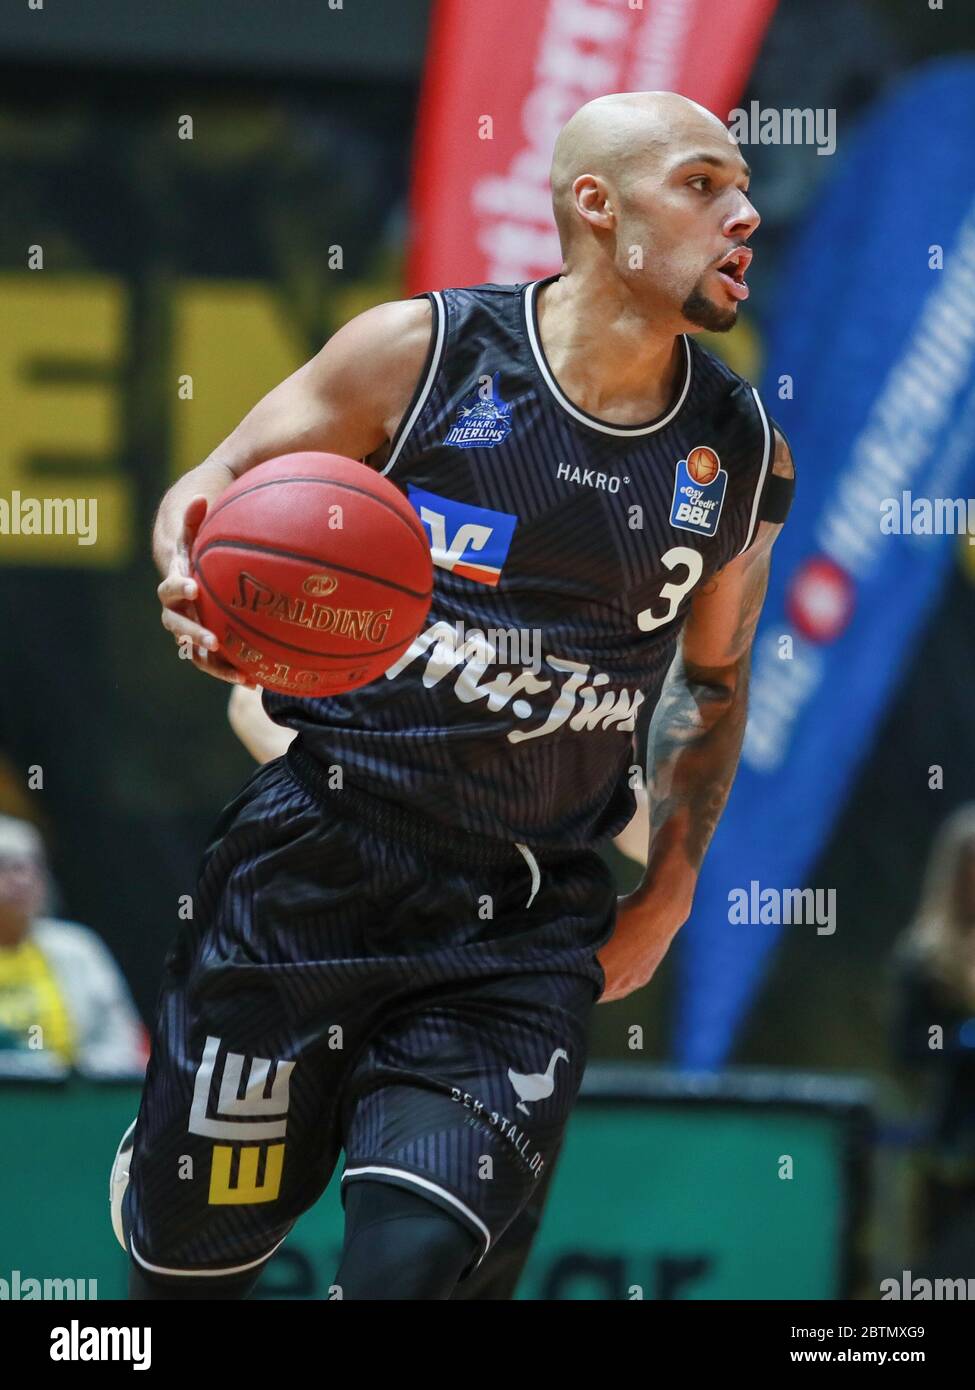 Braunschweig, Germania, 27 dicembre 2019: Maurice Stuckey di Merlins Cailsheim in azione durante la partita di pallacanestro BBL Bundesliga Foto Stock